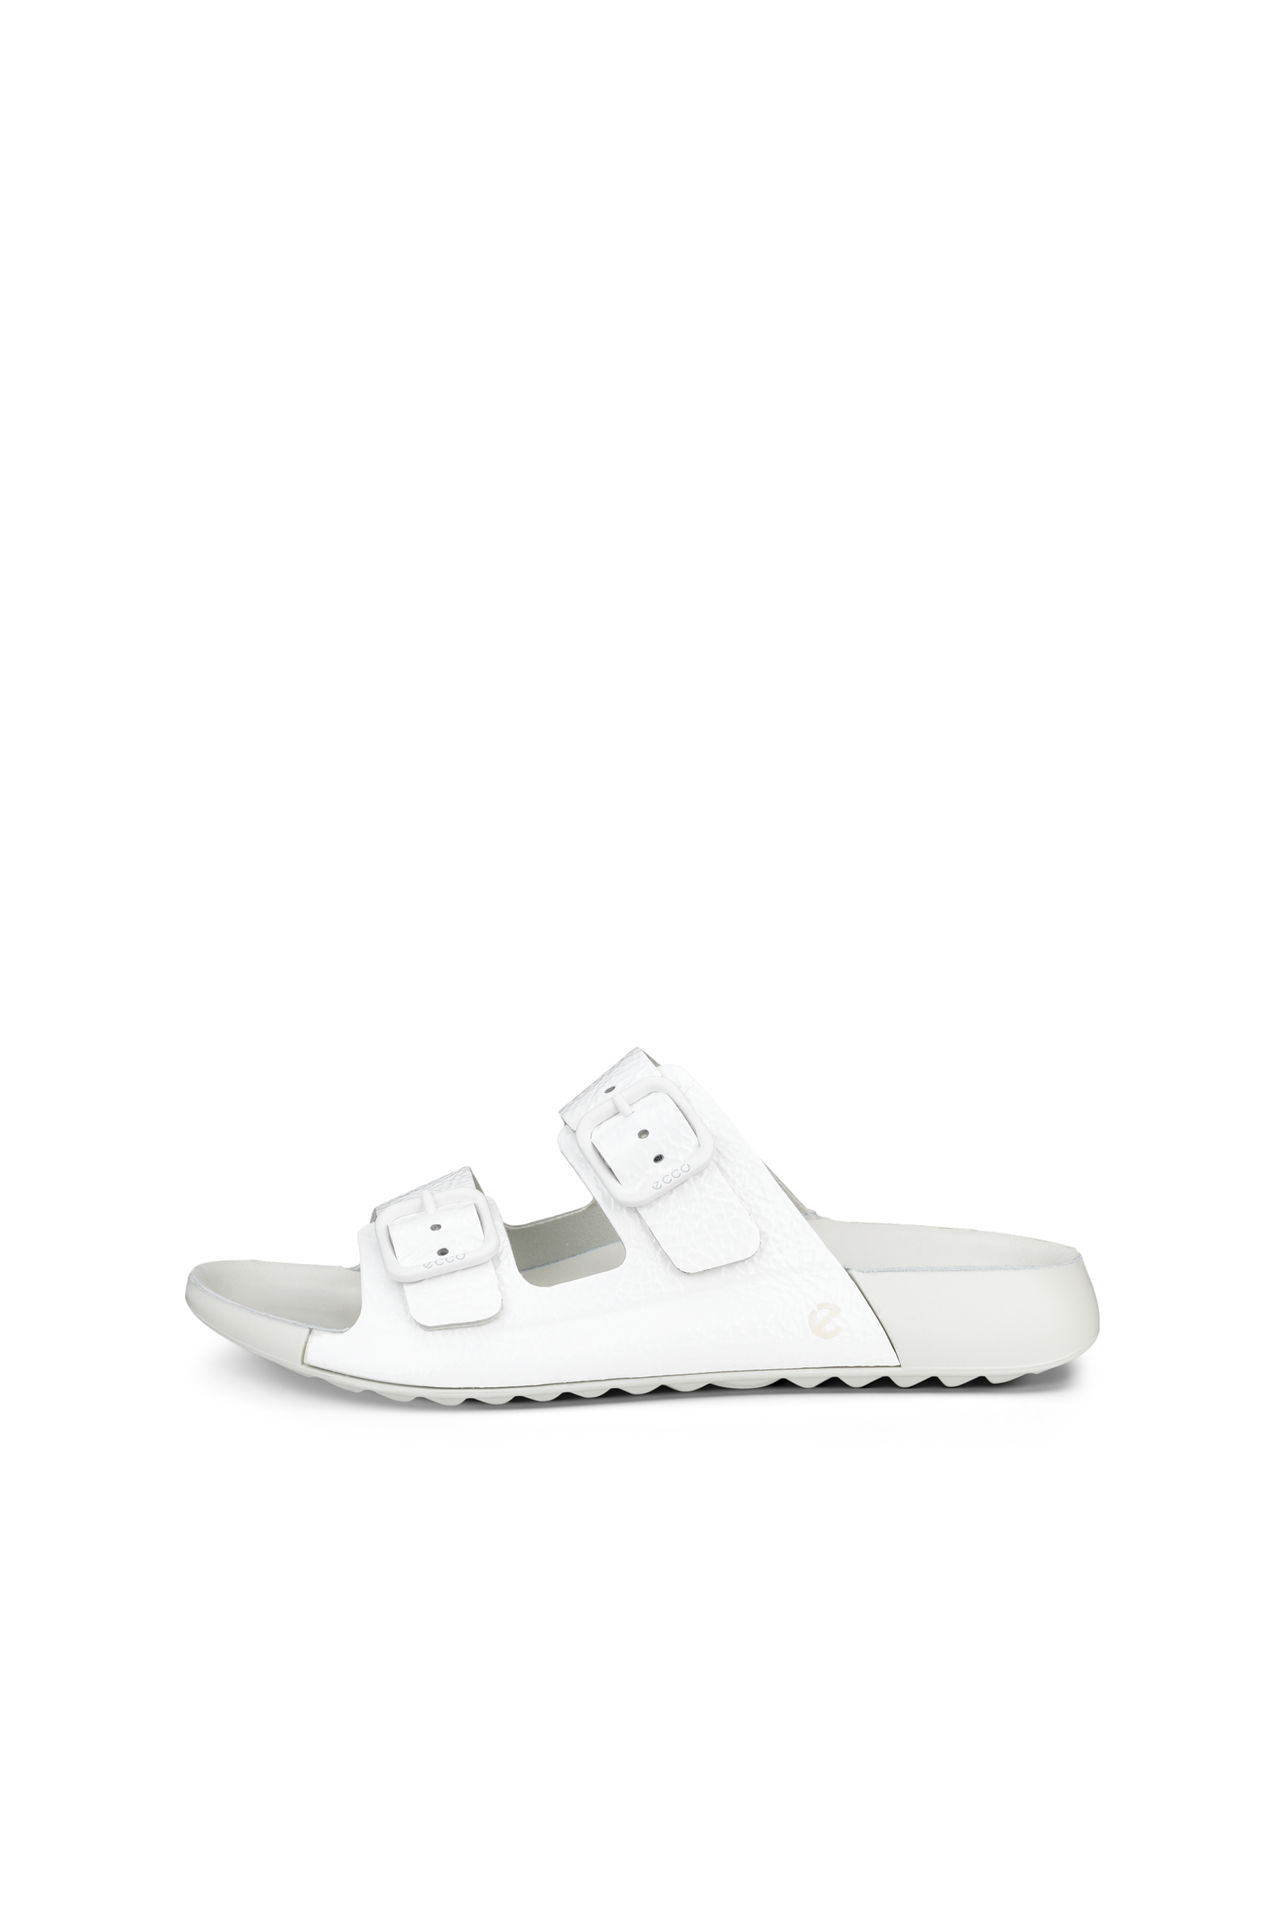 ECCO Cozmo Womens Sandal in bright white 206833 04002